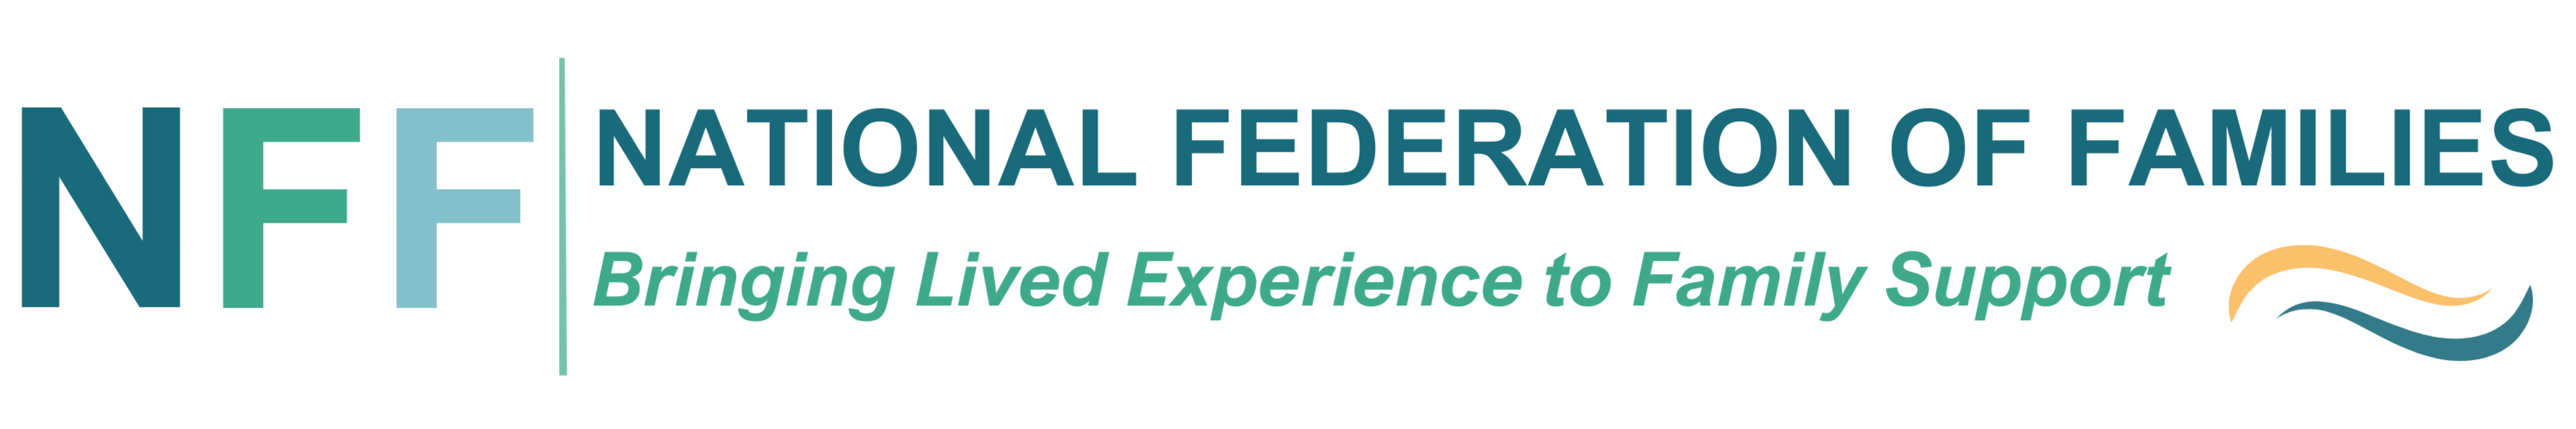 NFF Logo Transparent - large